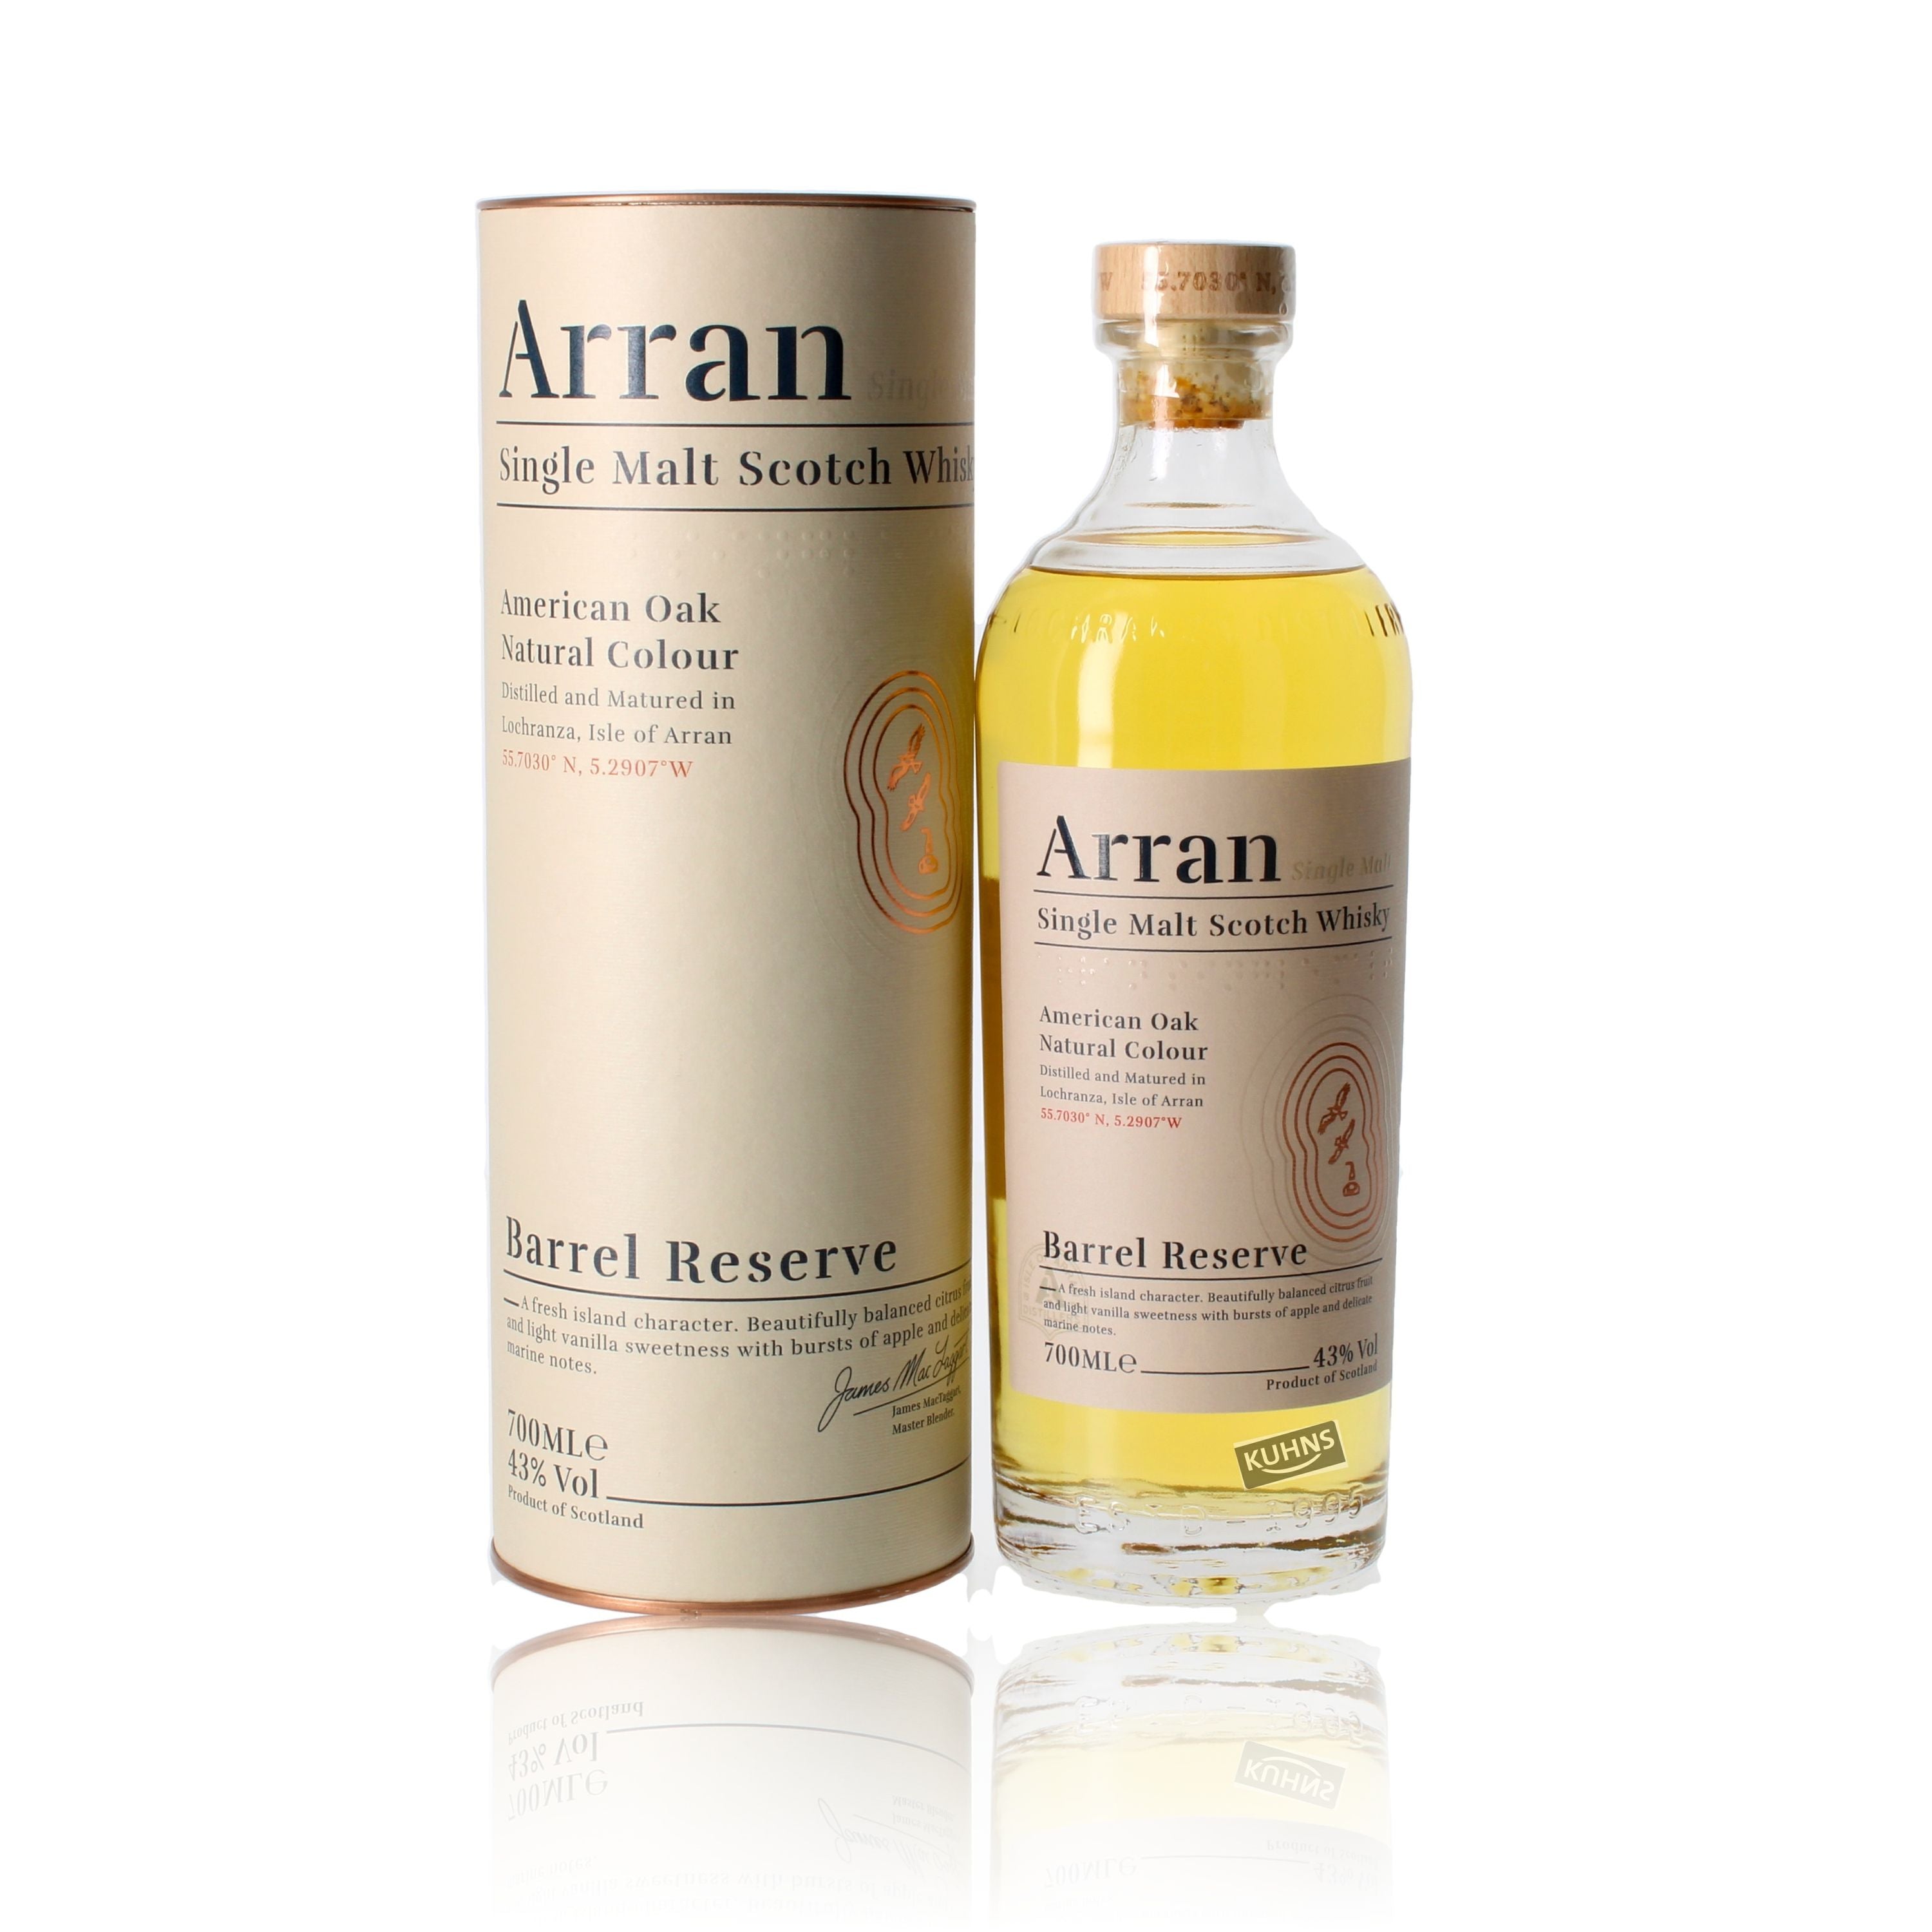 Arran Barrel Reserve Single Malt Scotch Whisky 0,7l, alc. 43 Vol.-%